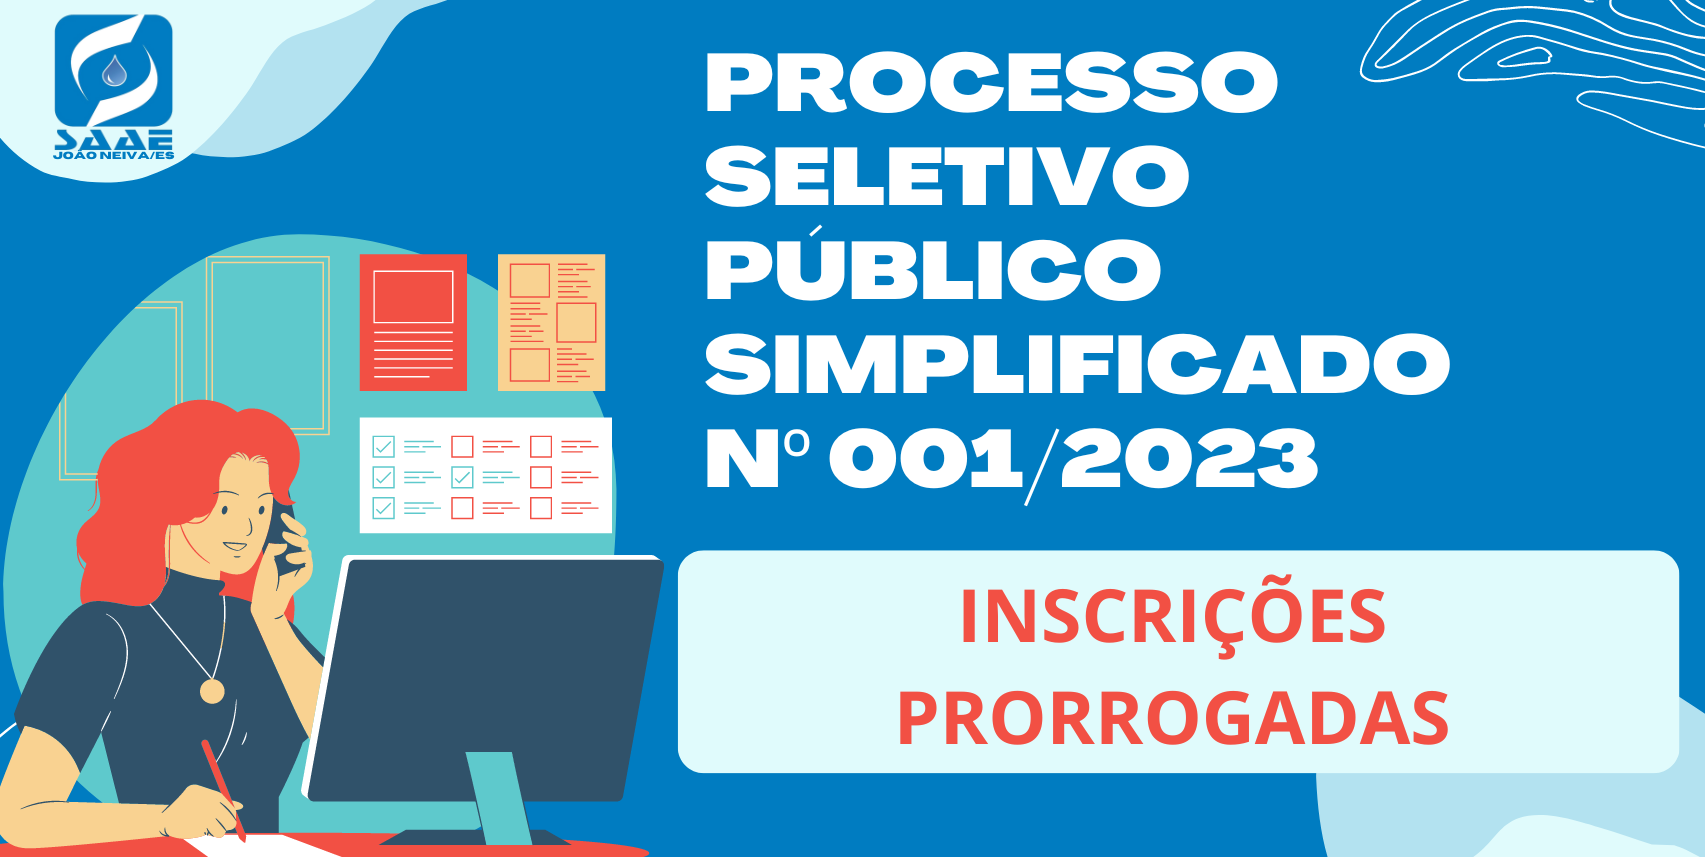 ALTERAÇÃO DE PERÍODO DE INSCRIÇÃO E CRONOGRAMA - PROCESSO SELETIVO PÚBLICO SIMPLIFICADO Nº 001/2023